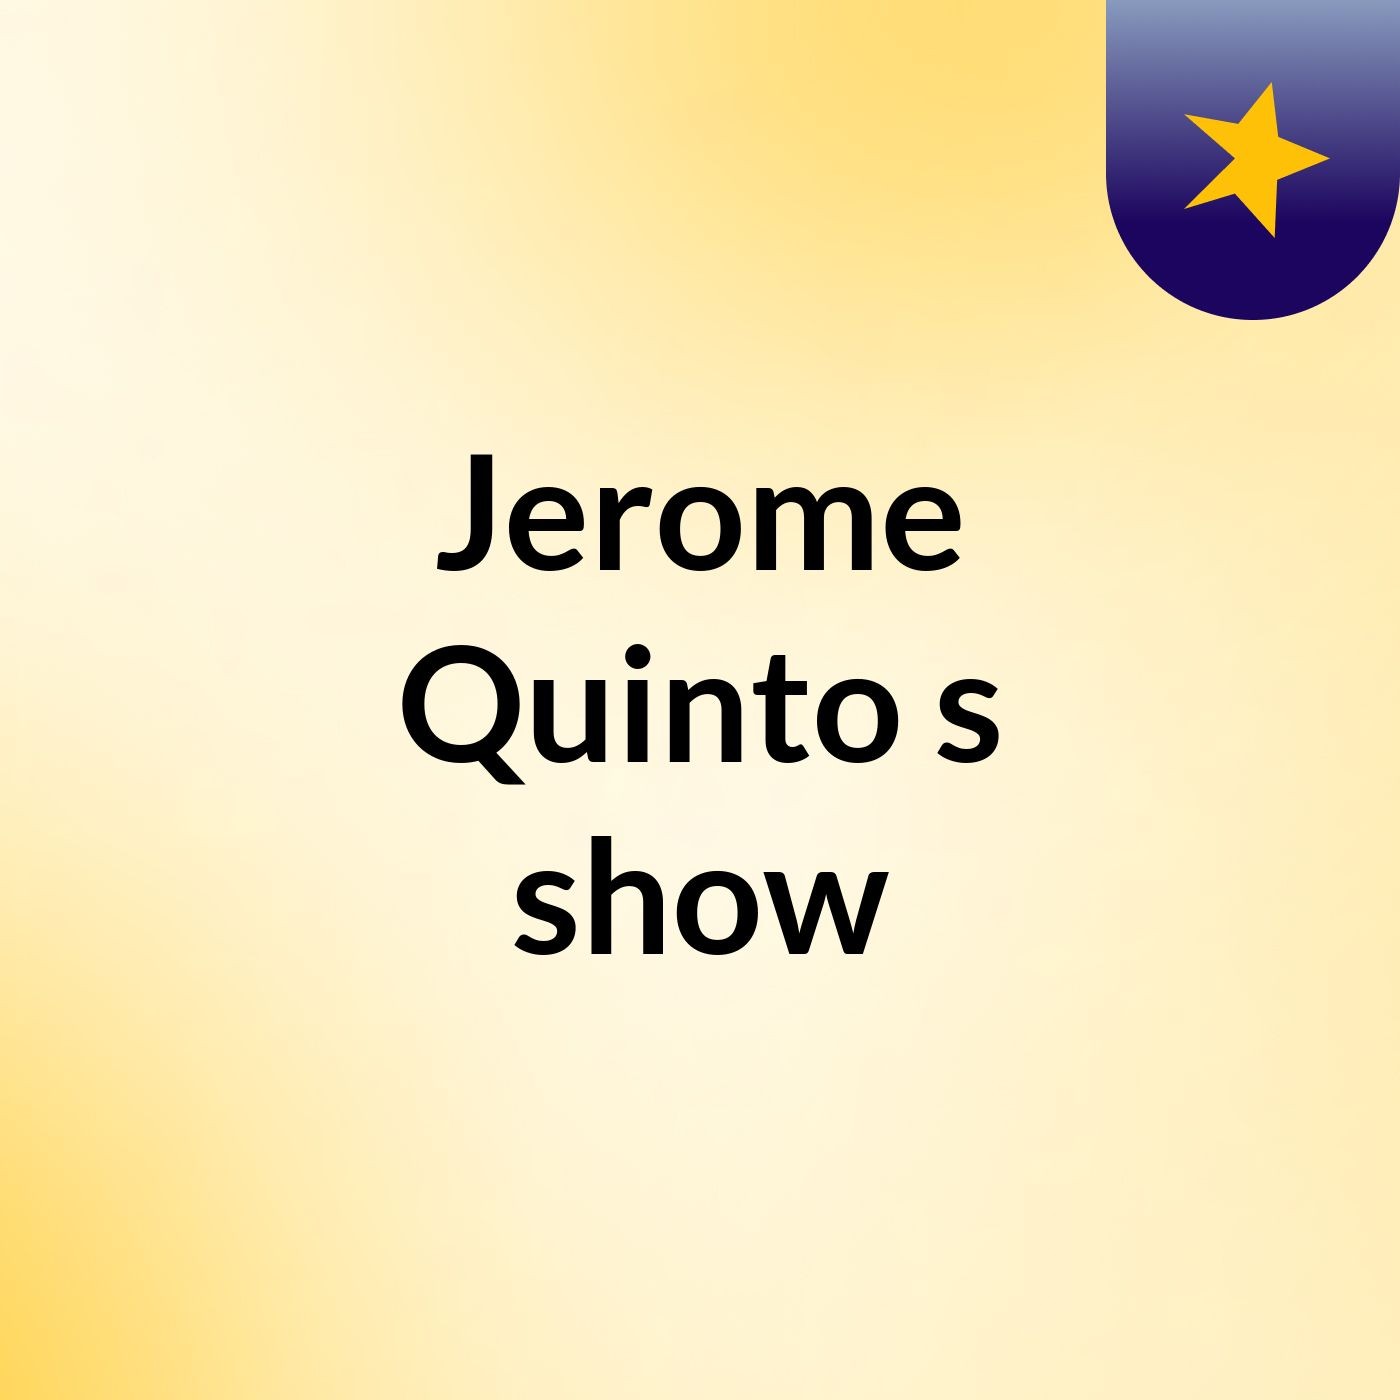 Episode 14 - Jerome Quinto's show